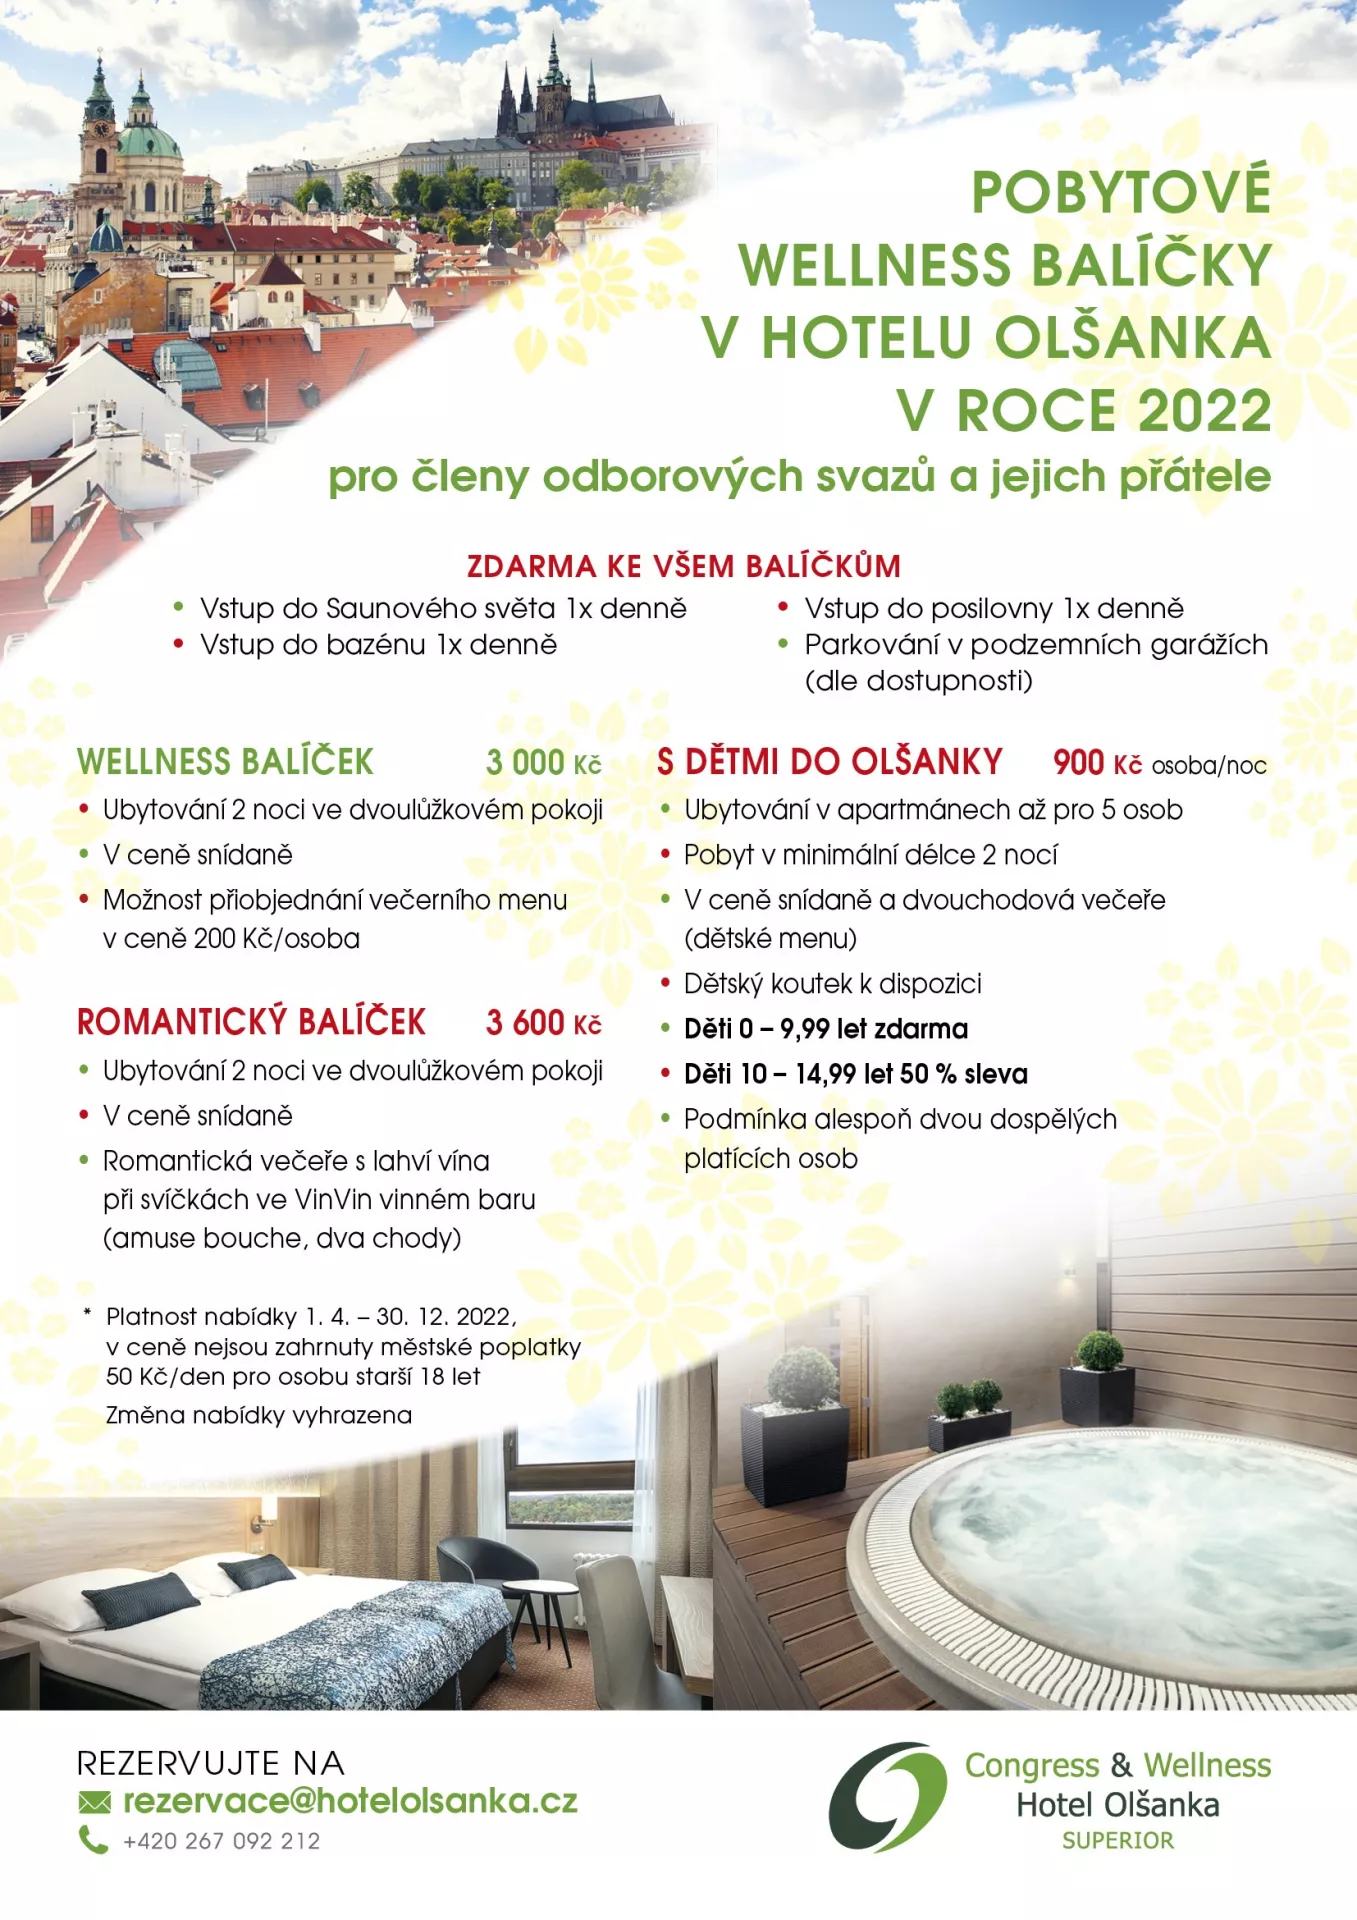 Tip na dovolenou: Hotelu Olšanka výhodně pro odboráře a odborářky